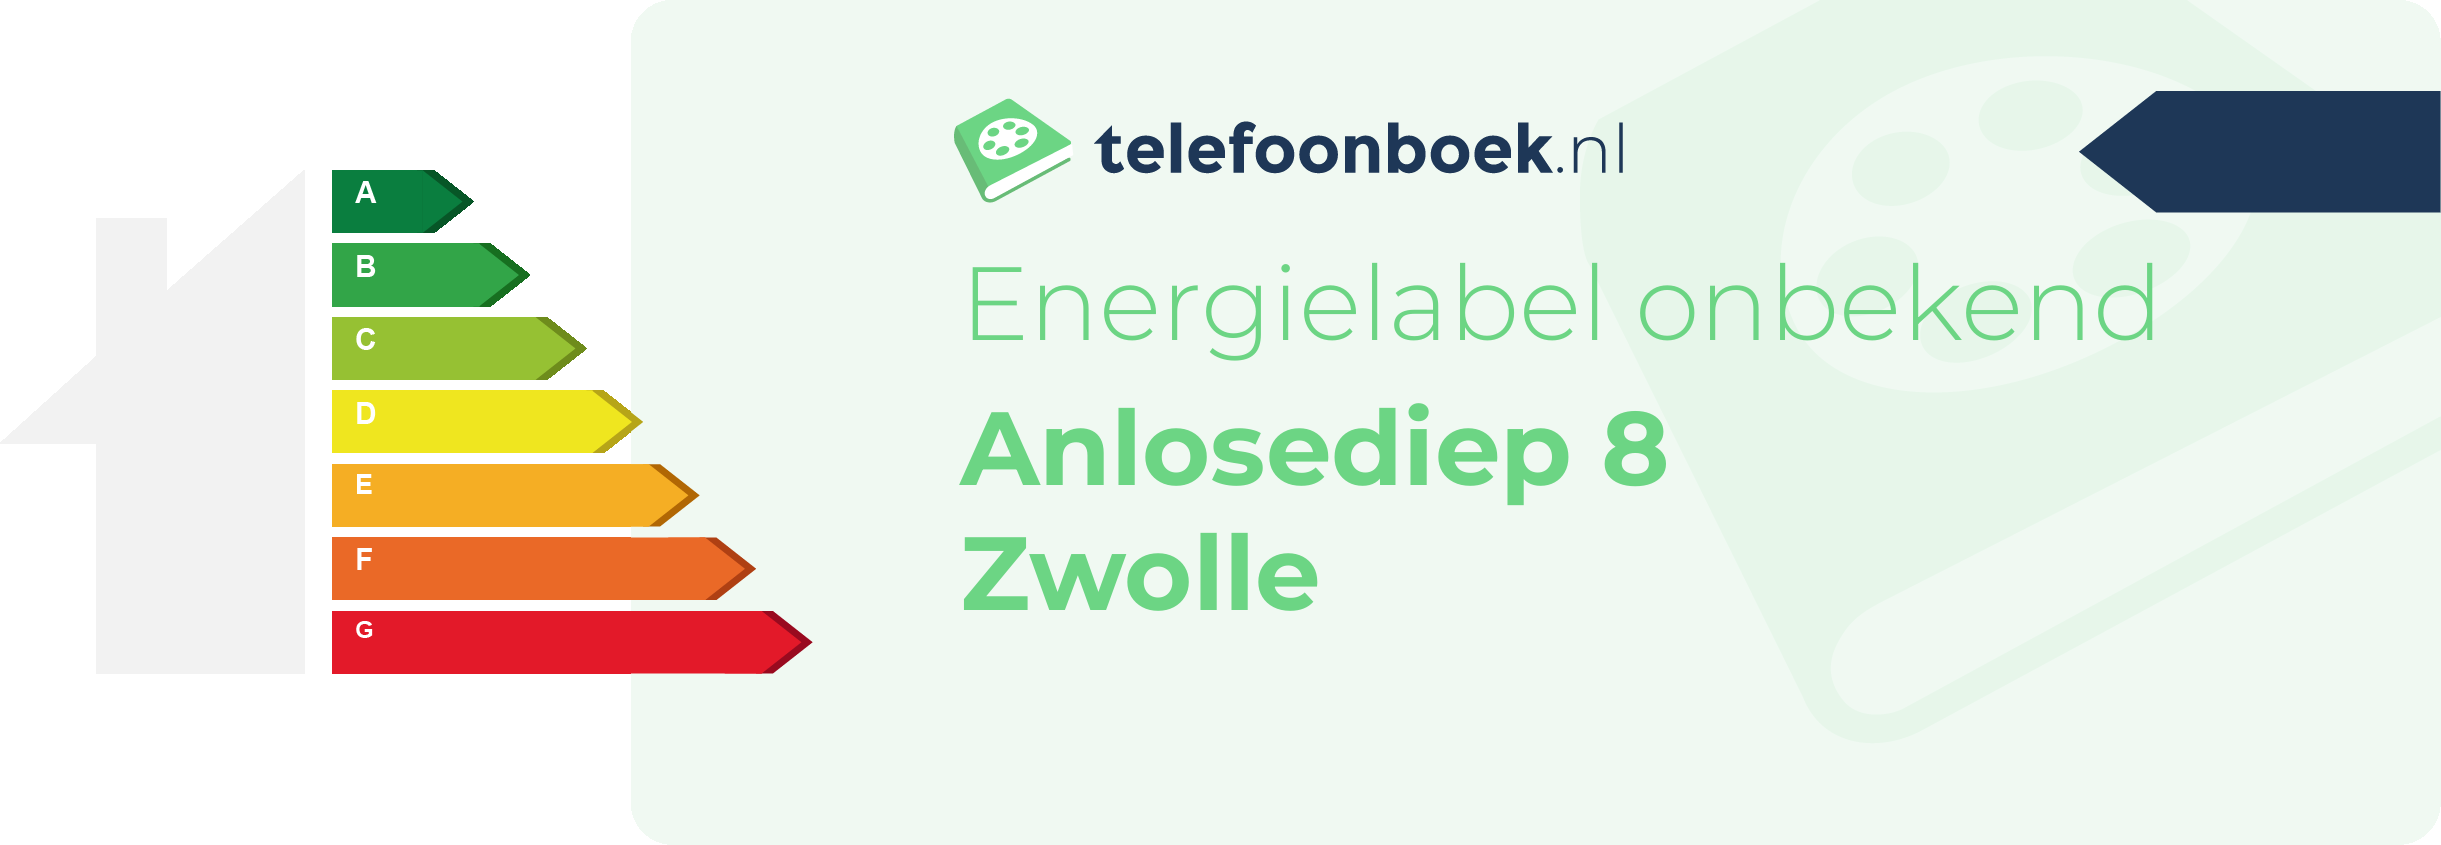 Energielabel Anlosediep 8 Zwolle